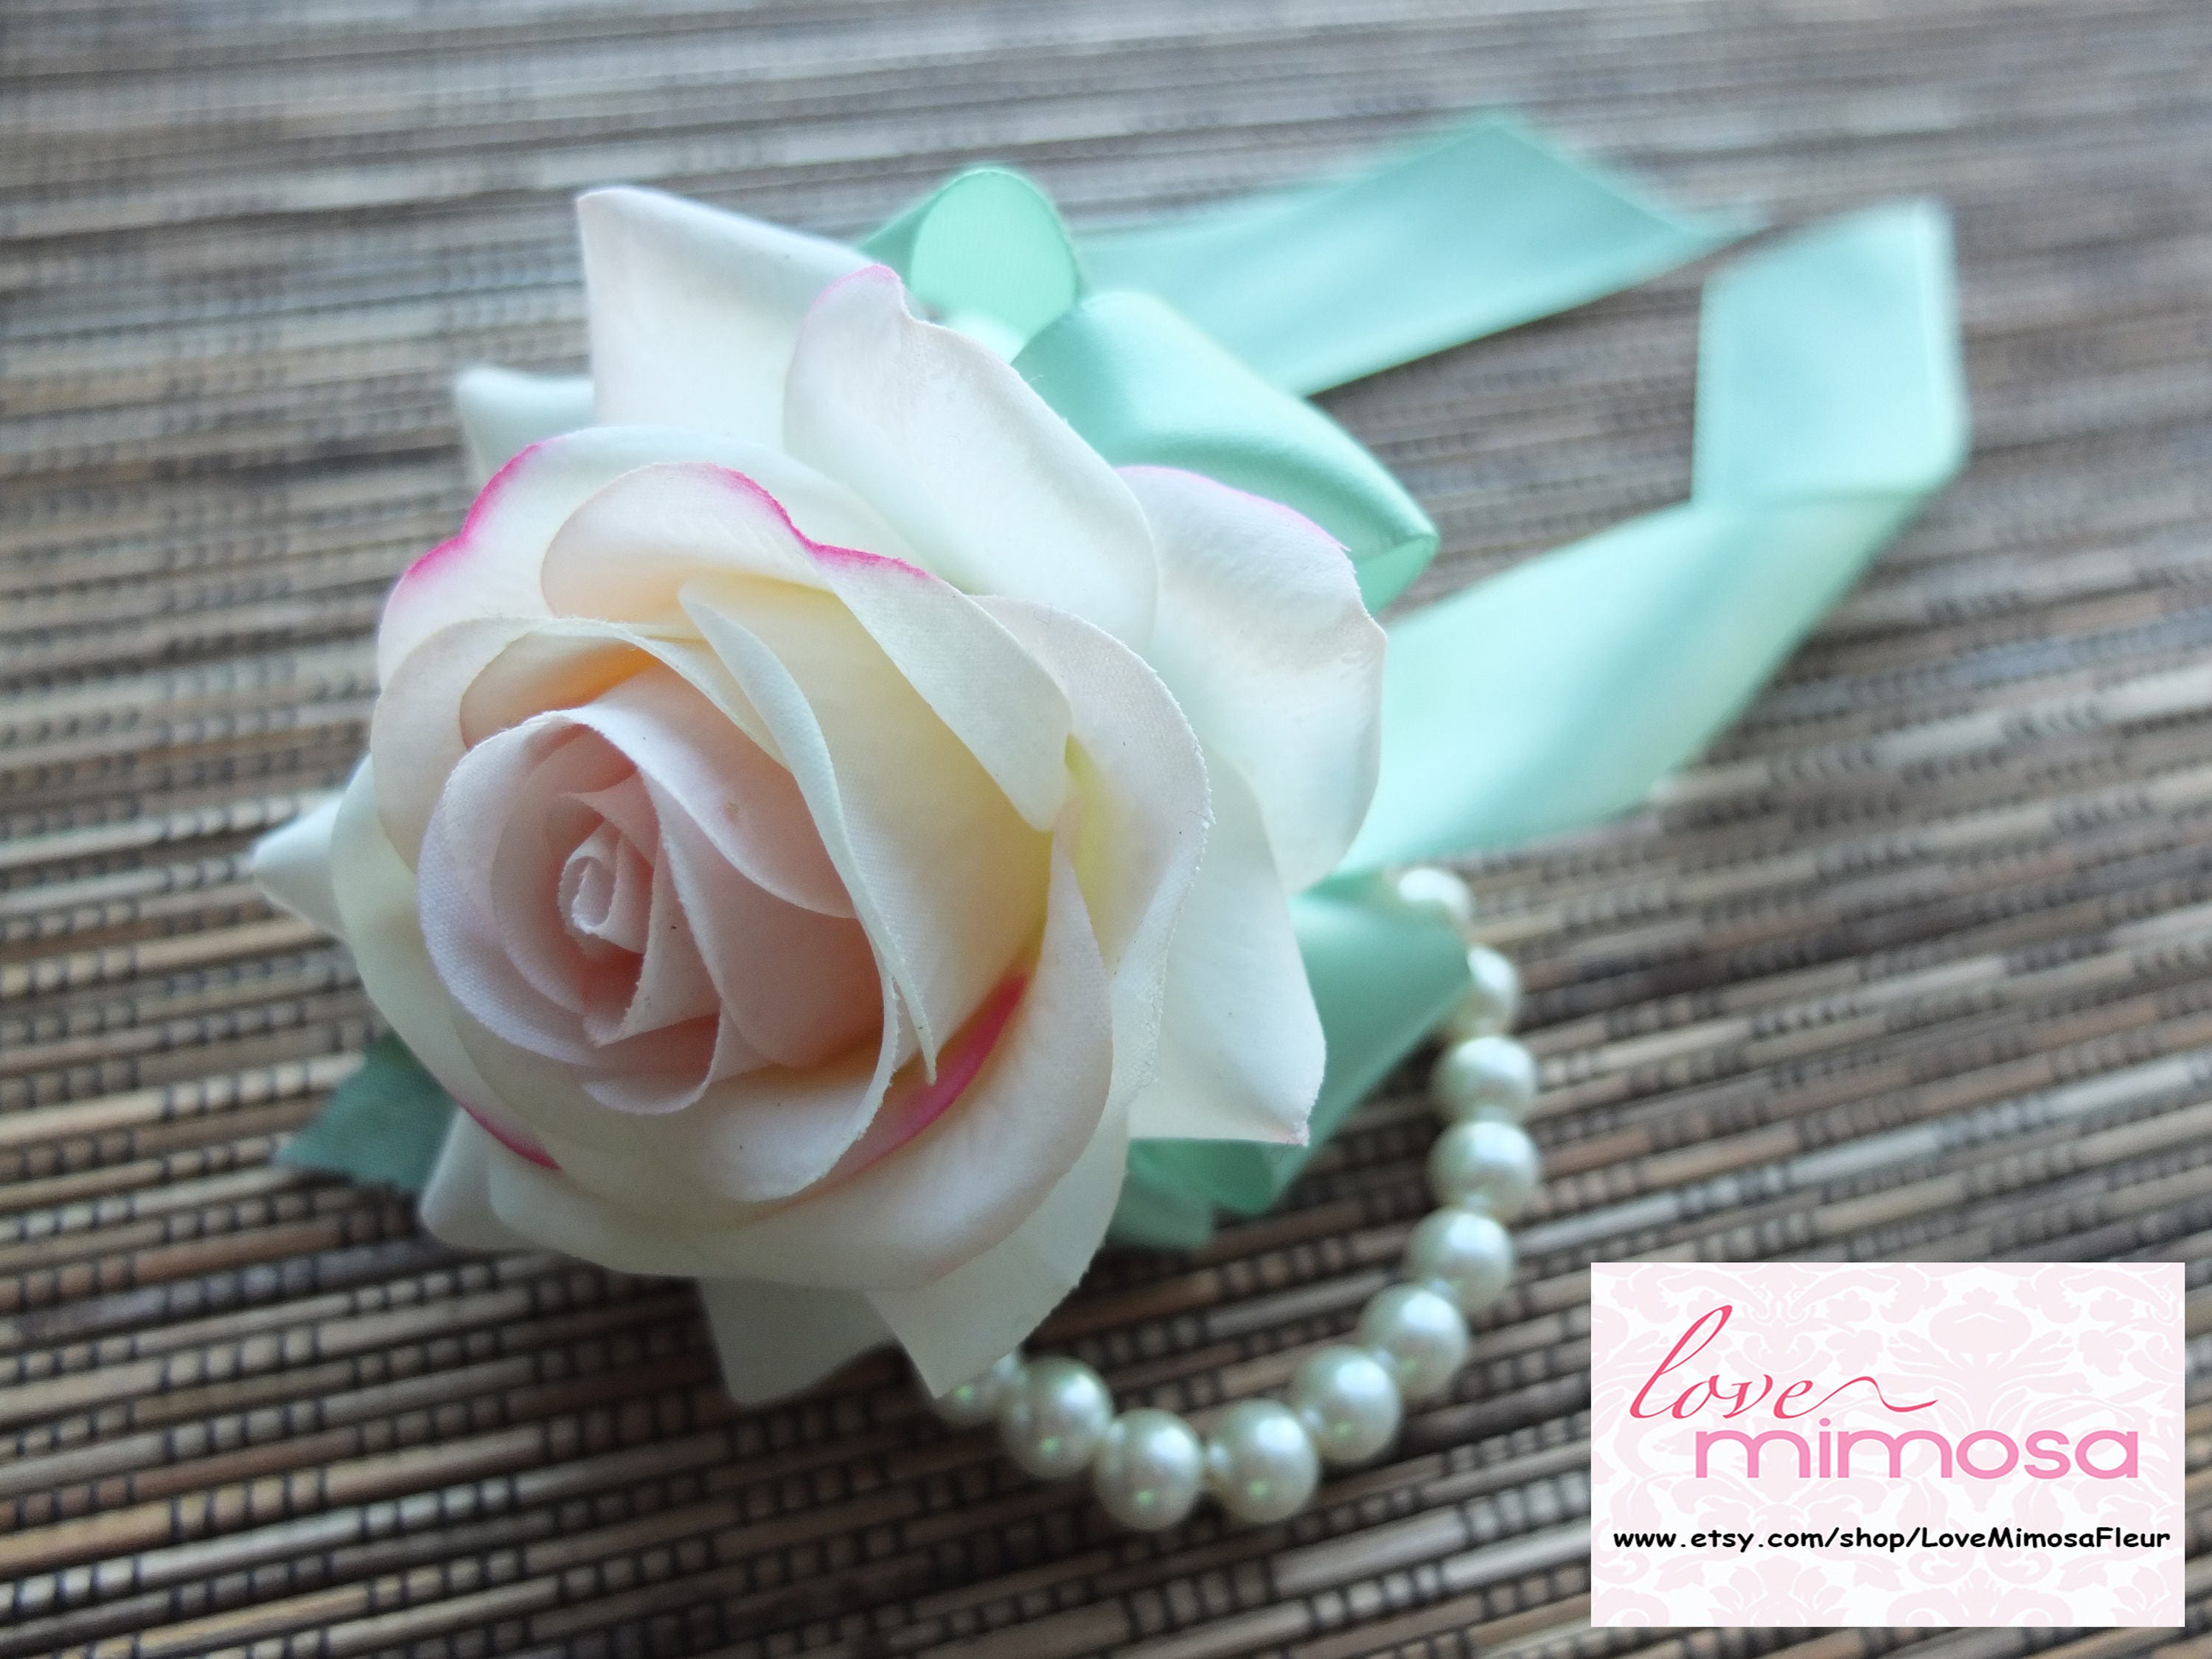 bridesmaid corsage blush pink rose wedding corsage Wedding corsage artificial flower corsage pearl wrist corsage